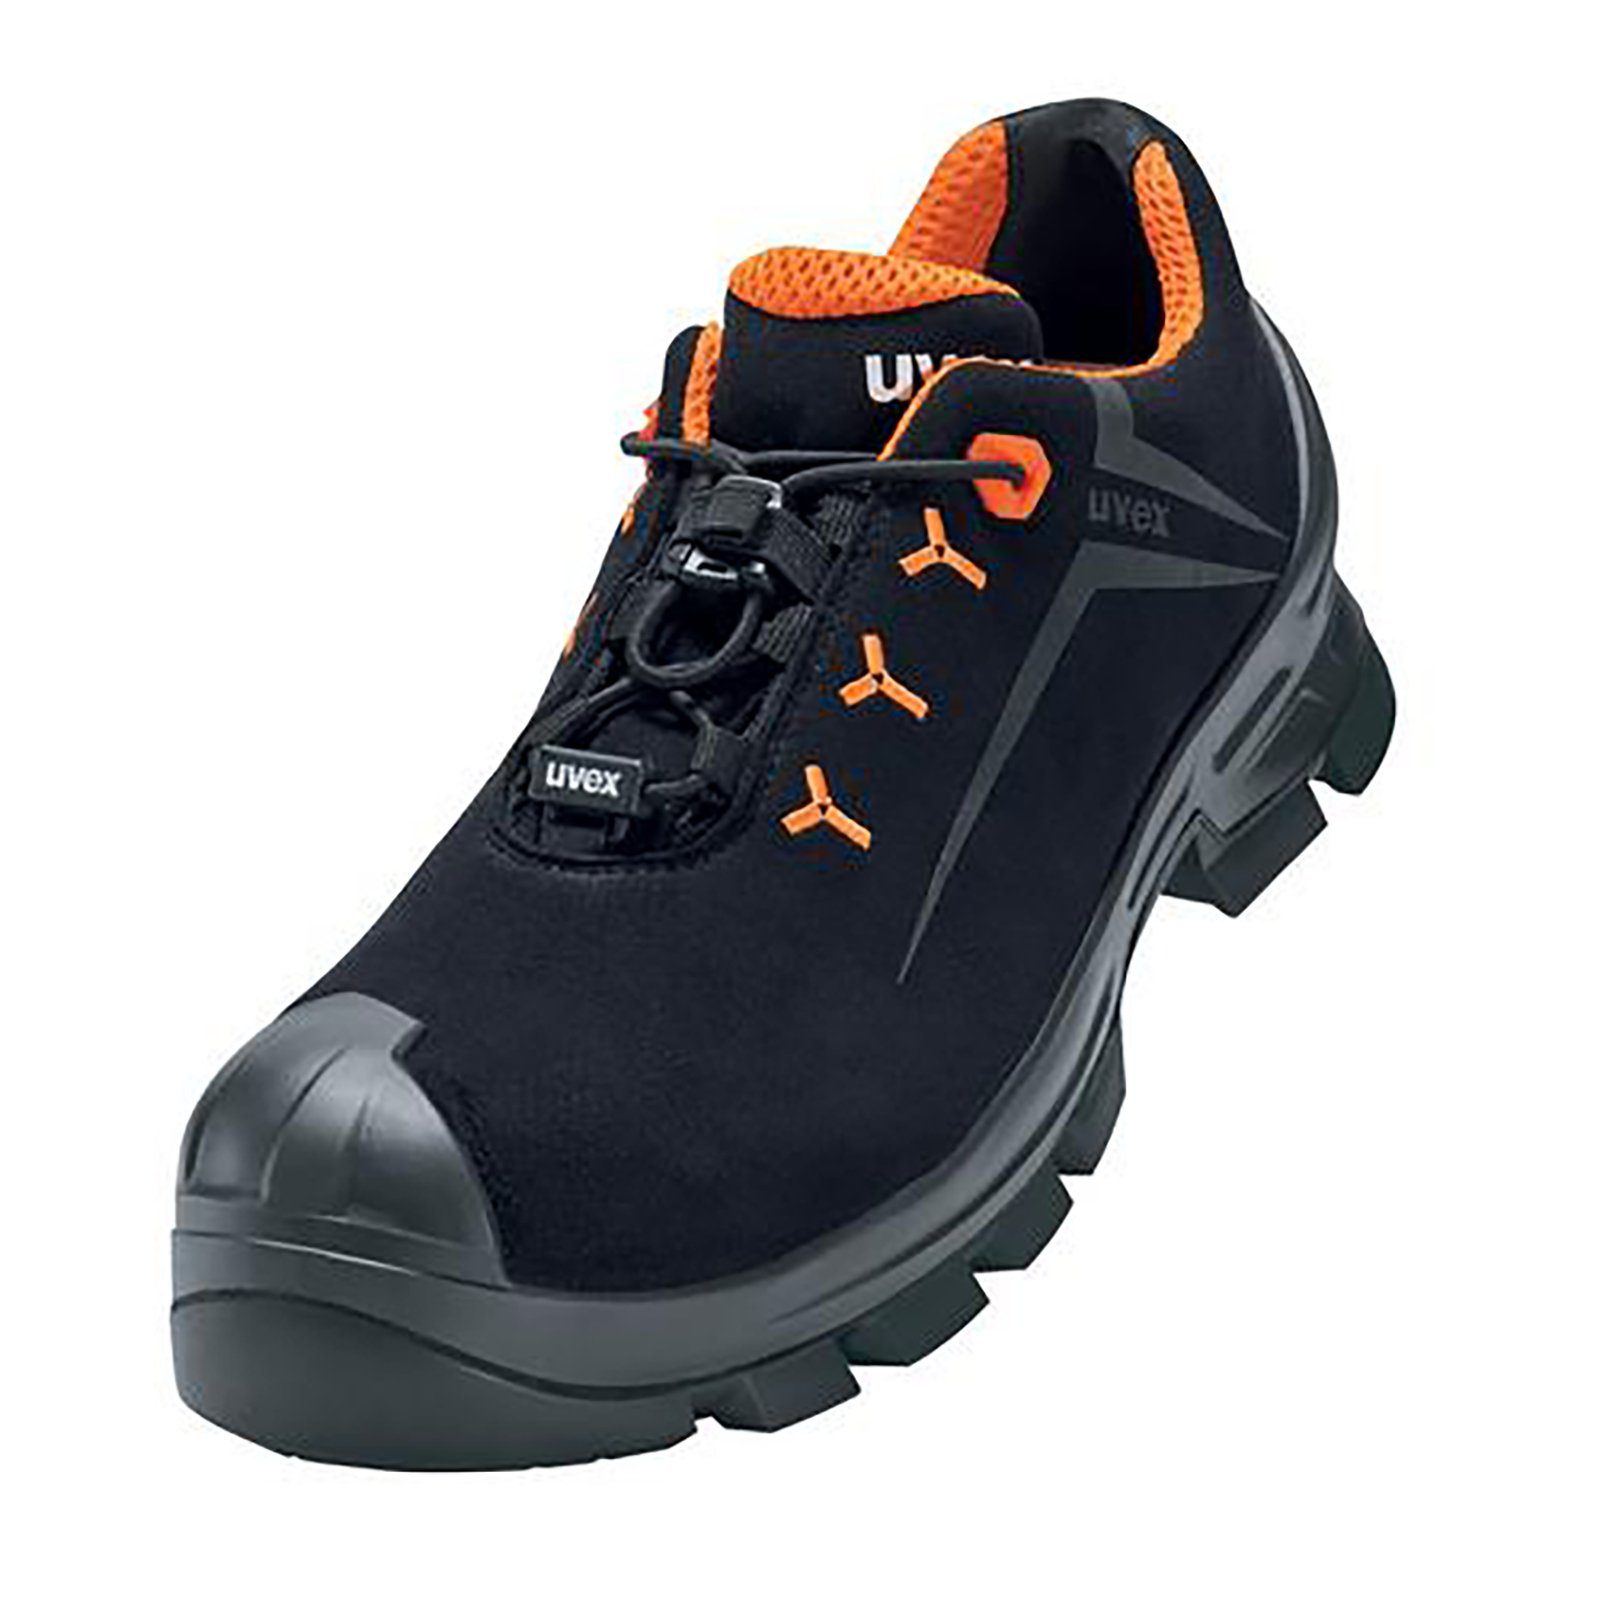 Uvex 2 MACSOLE® Halbschuhe S3 schwarz, orange Weite 11 Sicherheitsschuh